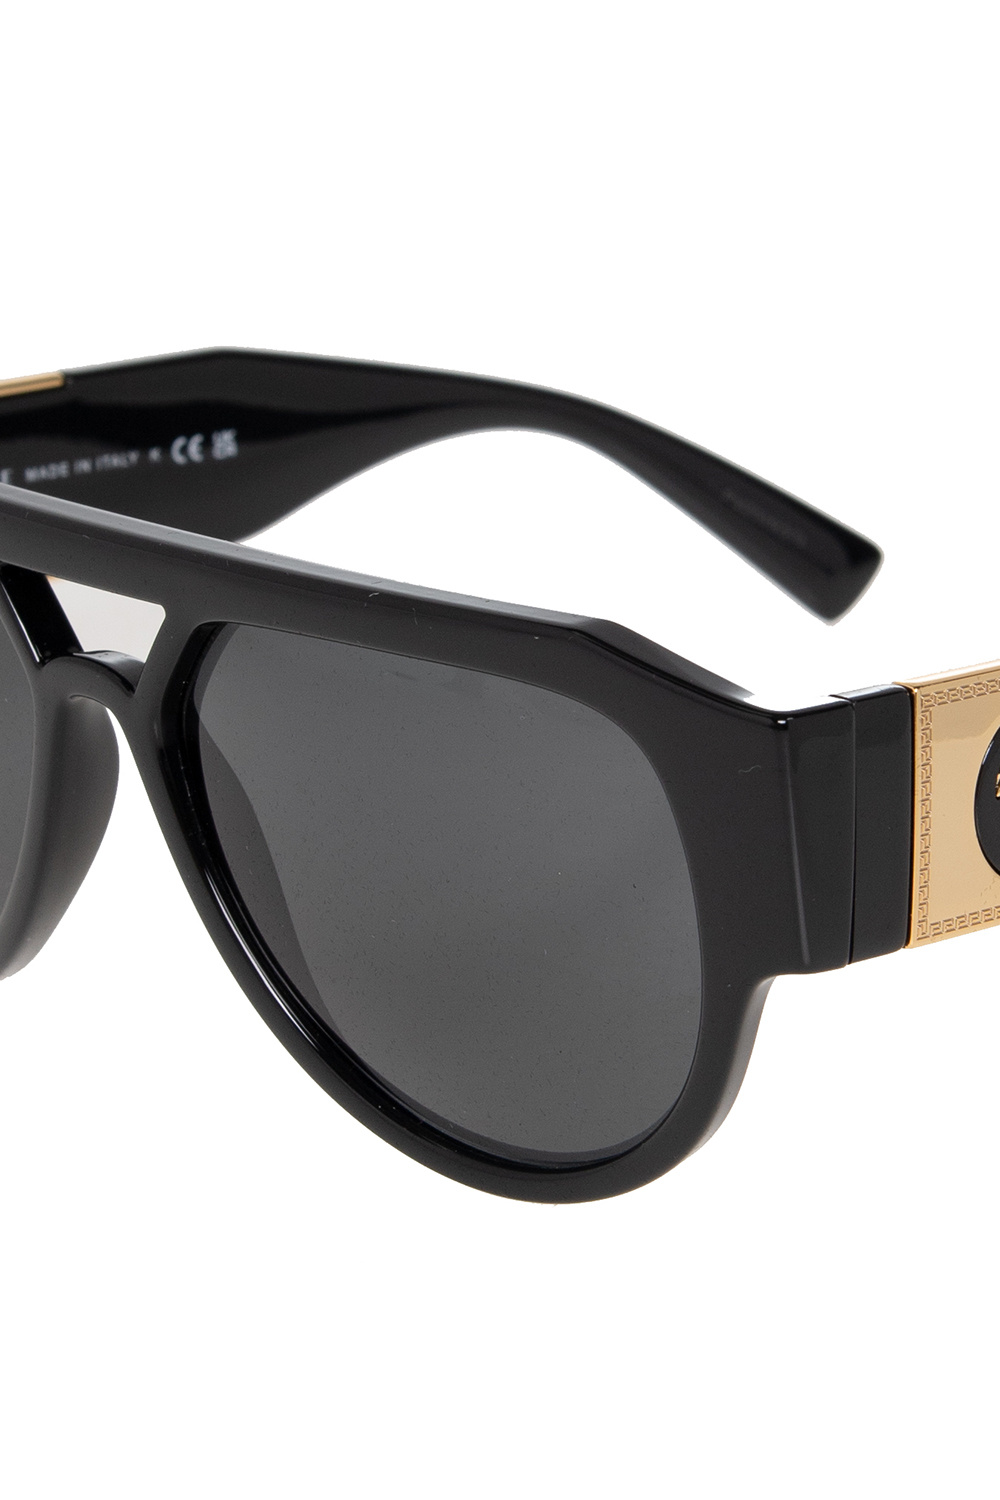 Versace CORSO COMO Sunglasses